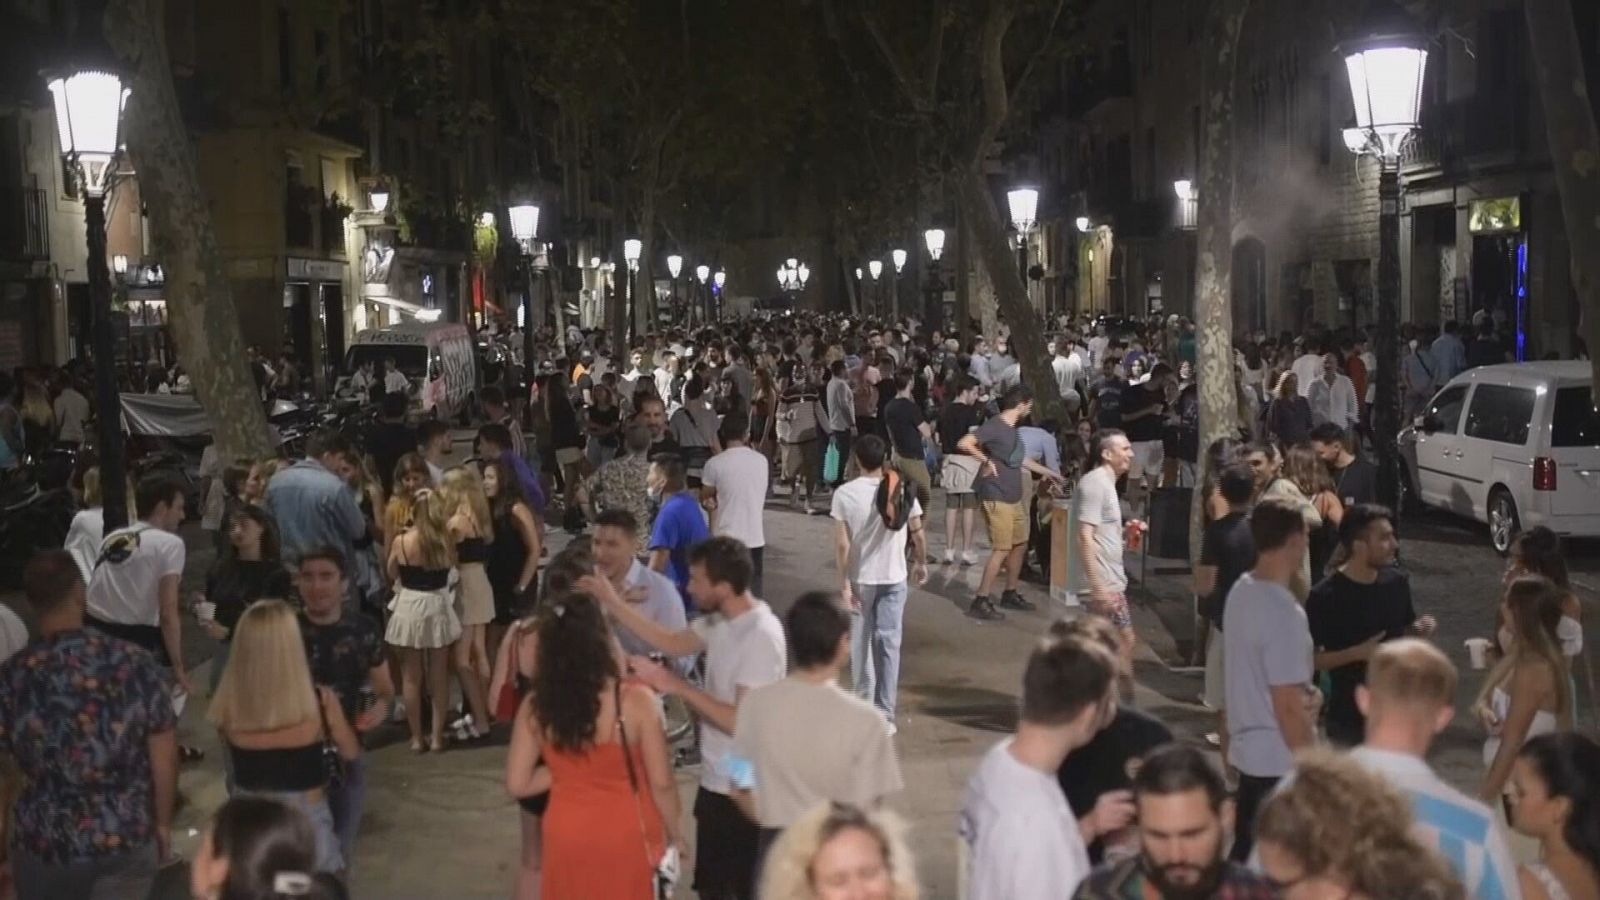 Un grupo numeroso de jóvenes ocupa una calle durante la noche.